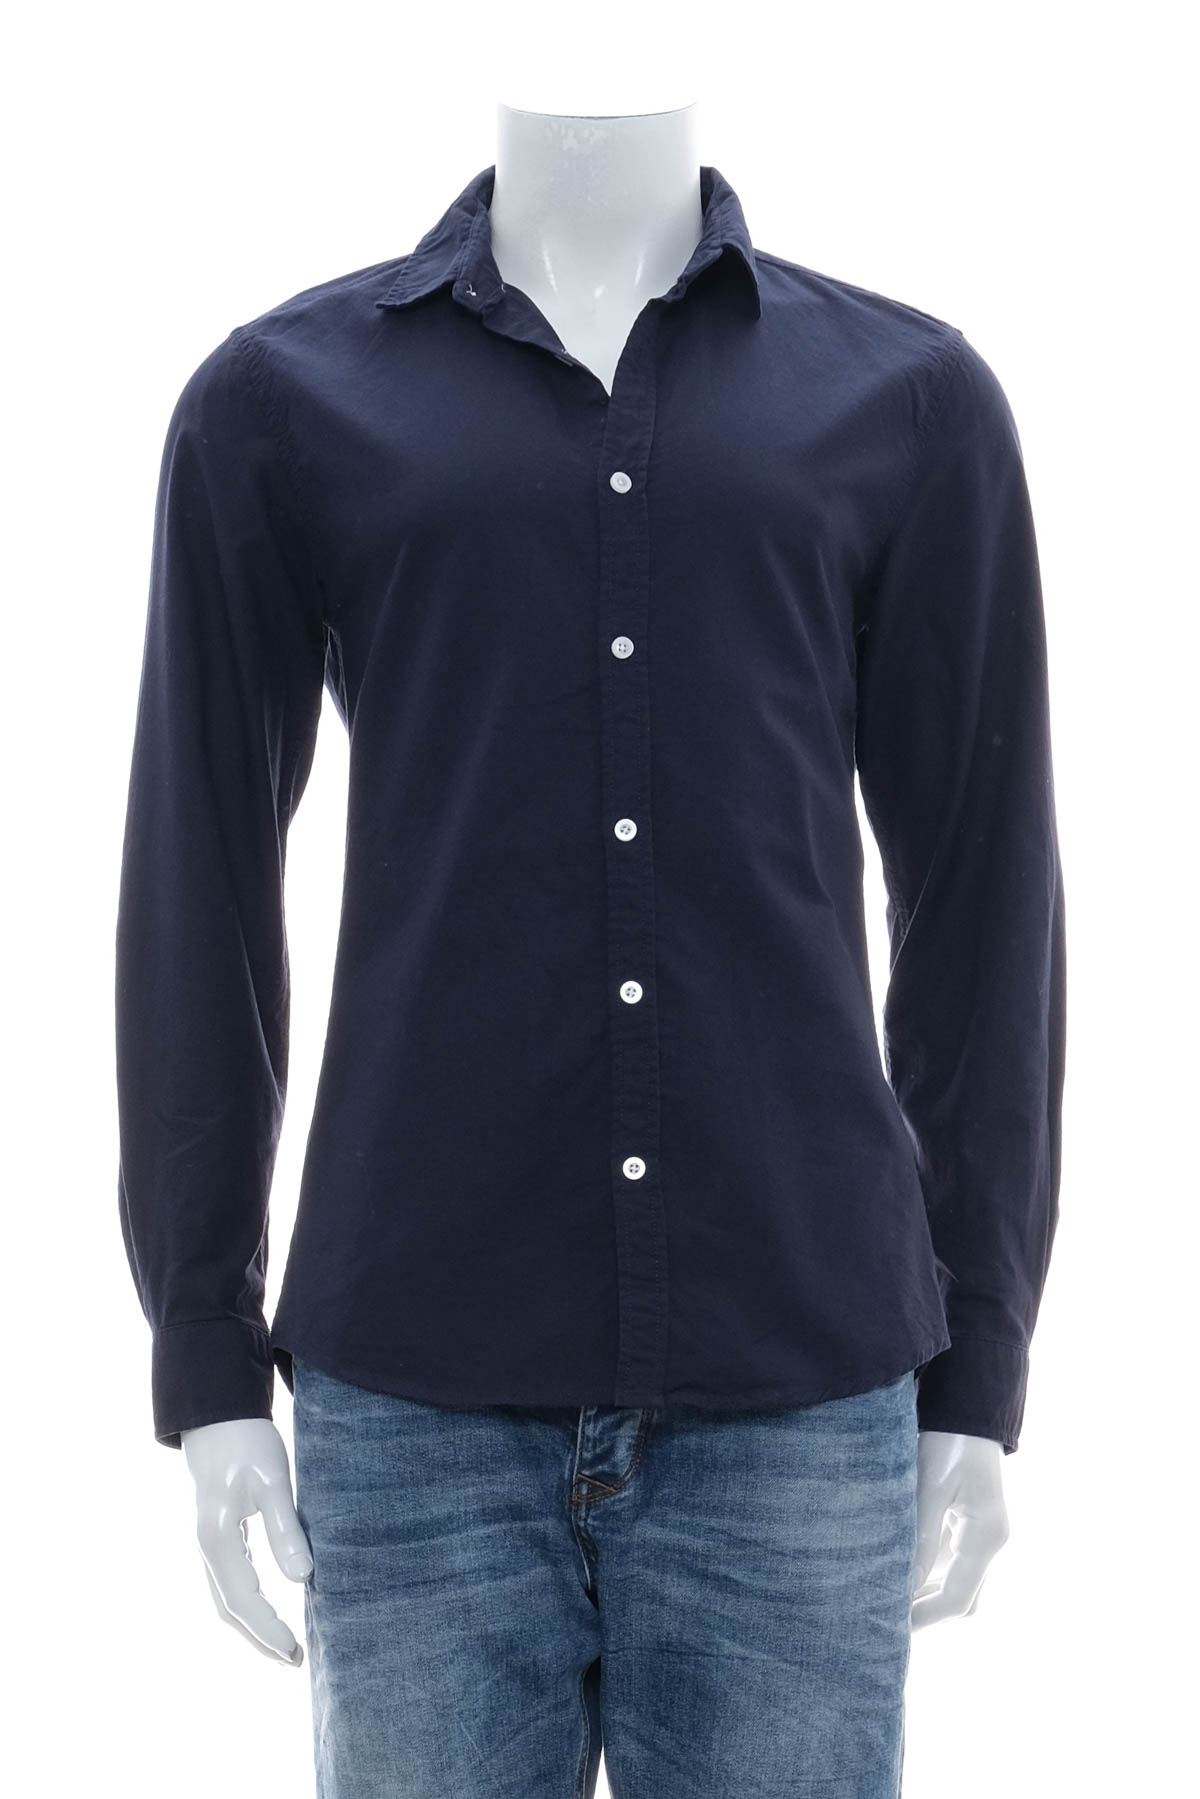 Ανδρικό πουκάμισο - Jean Pascale - 0